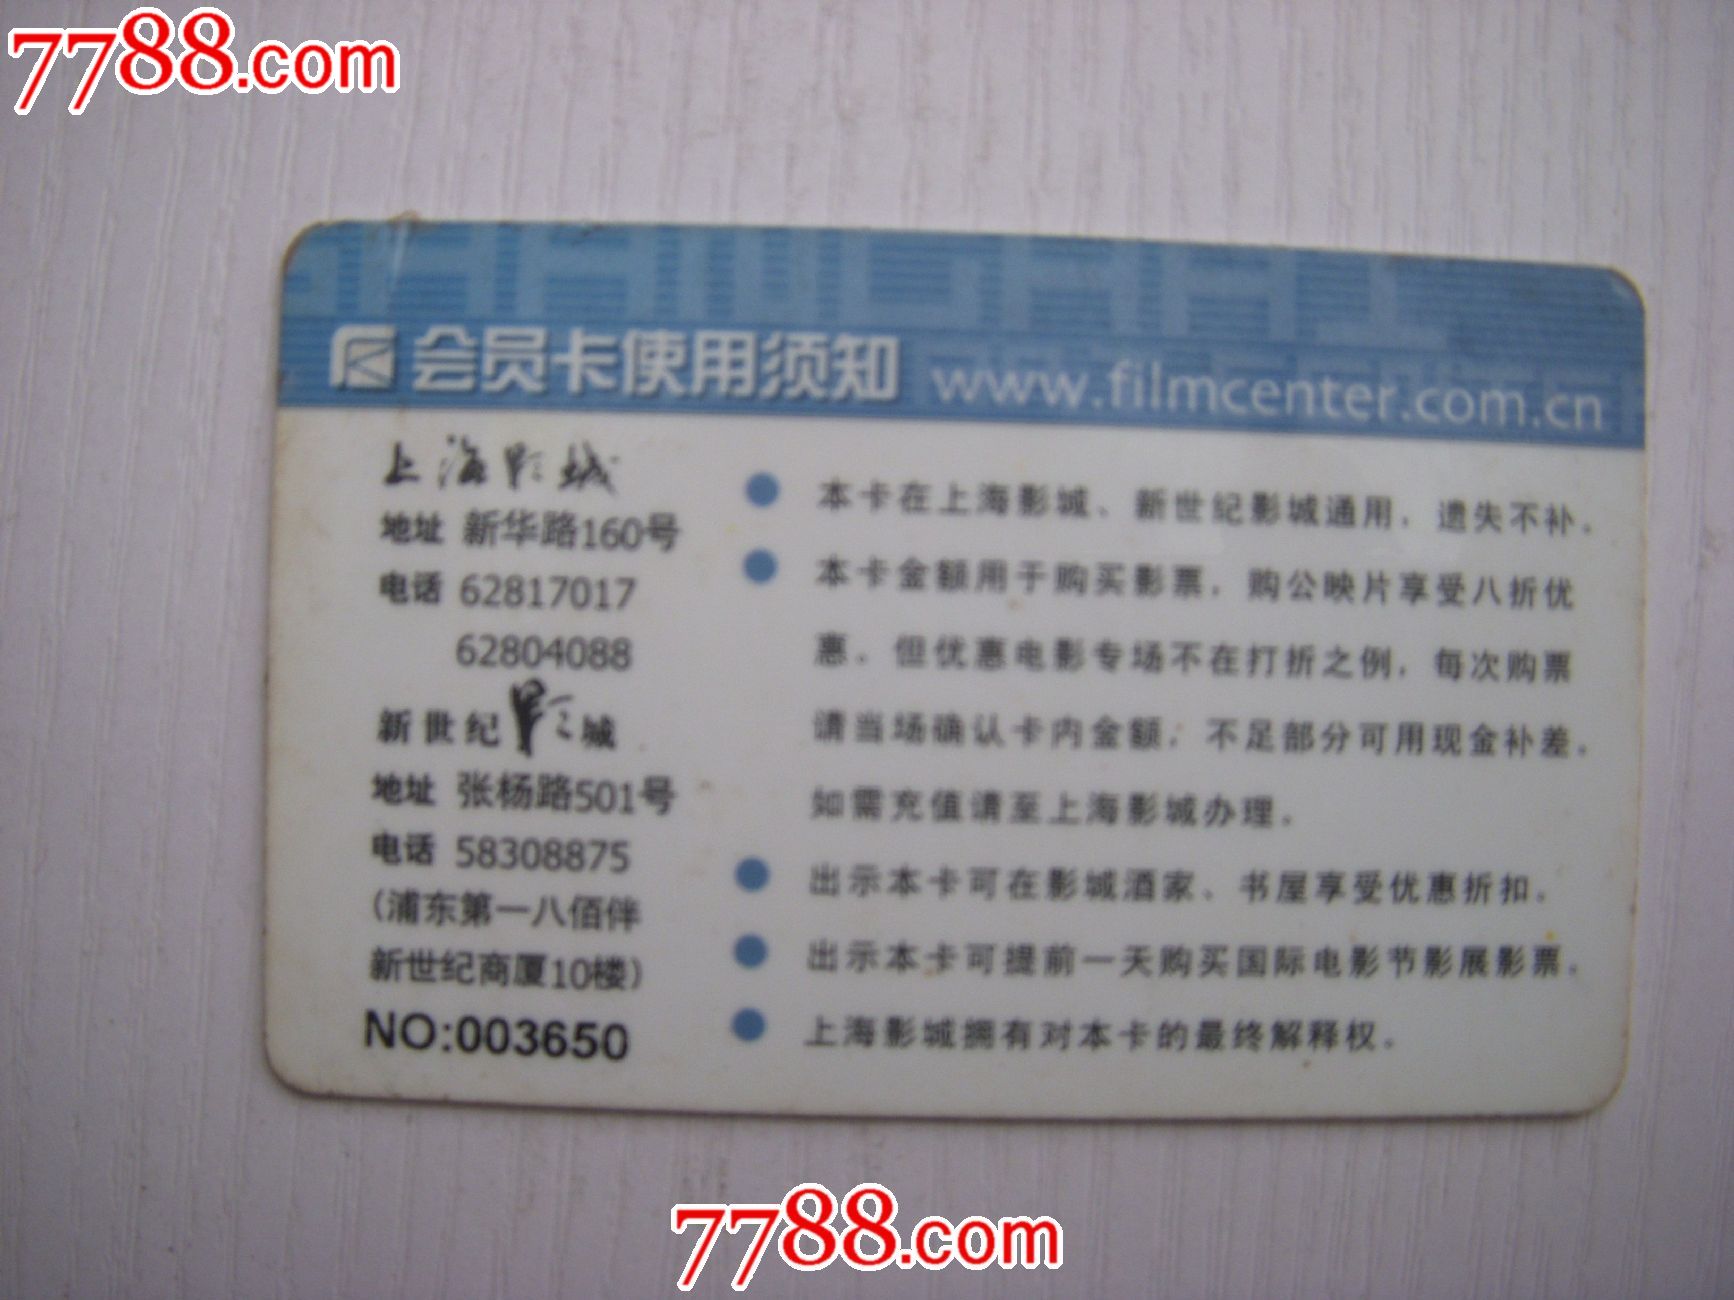 上海影城会员卡卡-价格:8元-se23606674-其他